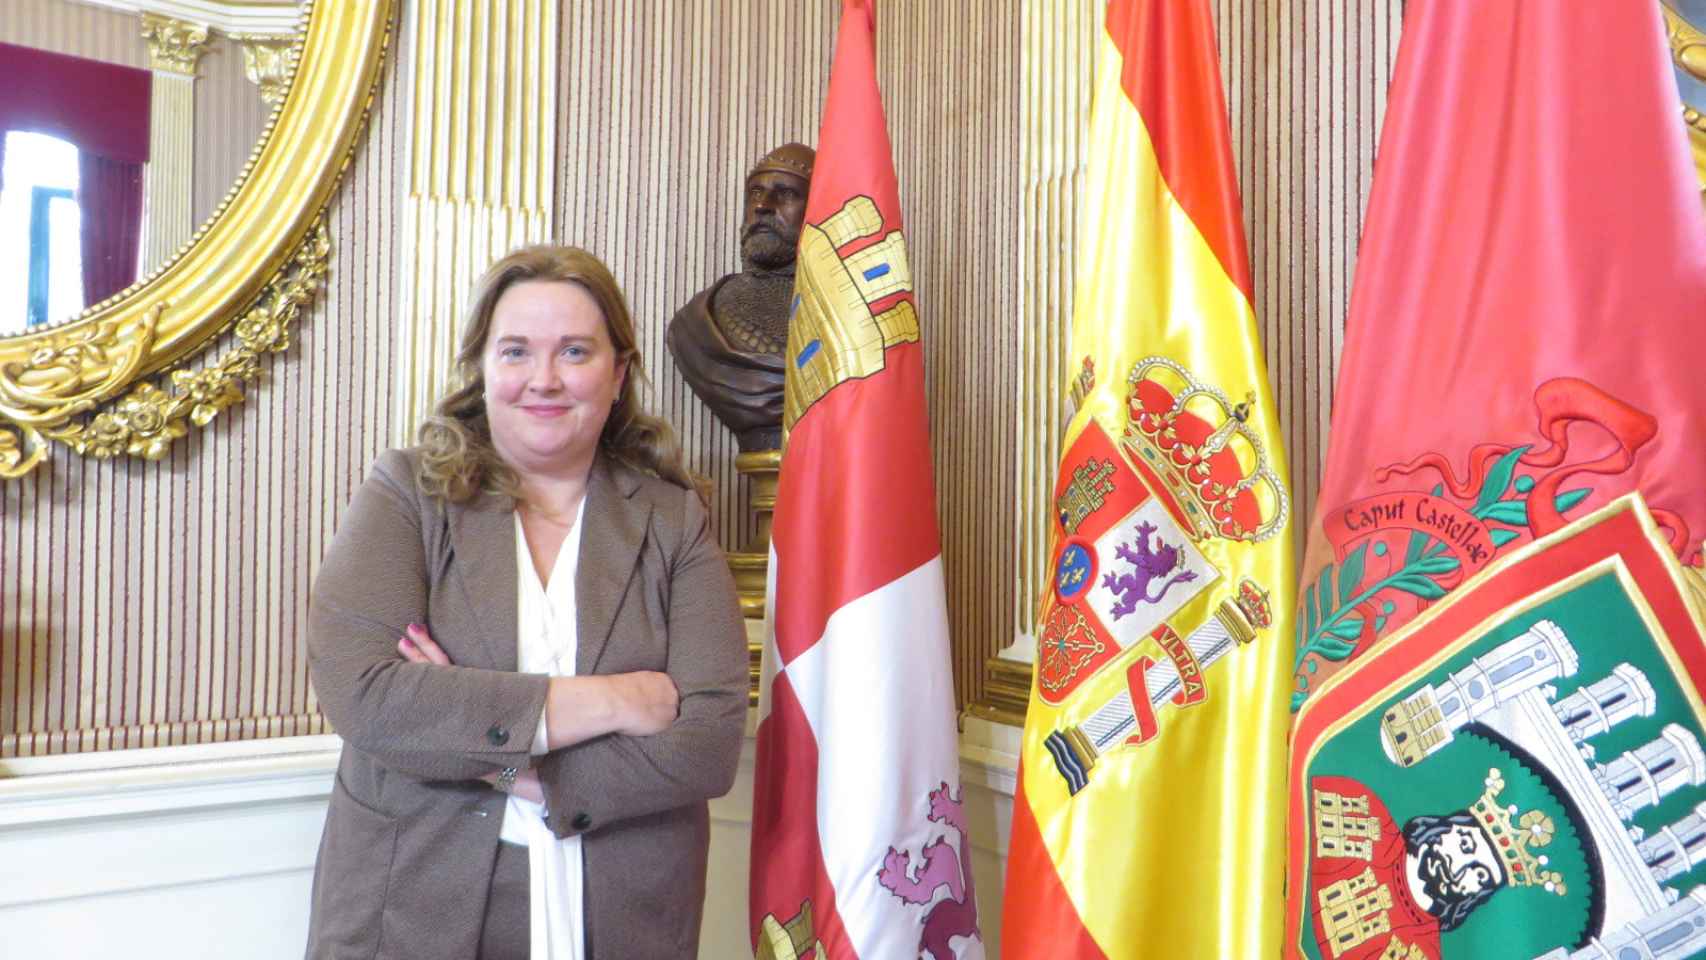 Cristina Ayala, junto al busto de Rodrigo Díaz de Vivar, el Cid Campeador, y las banderas de Castilla y León, España y Burgos